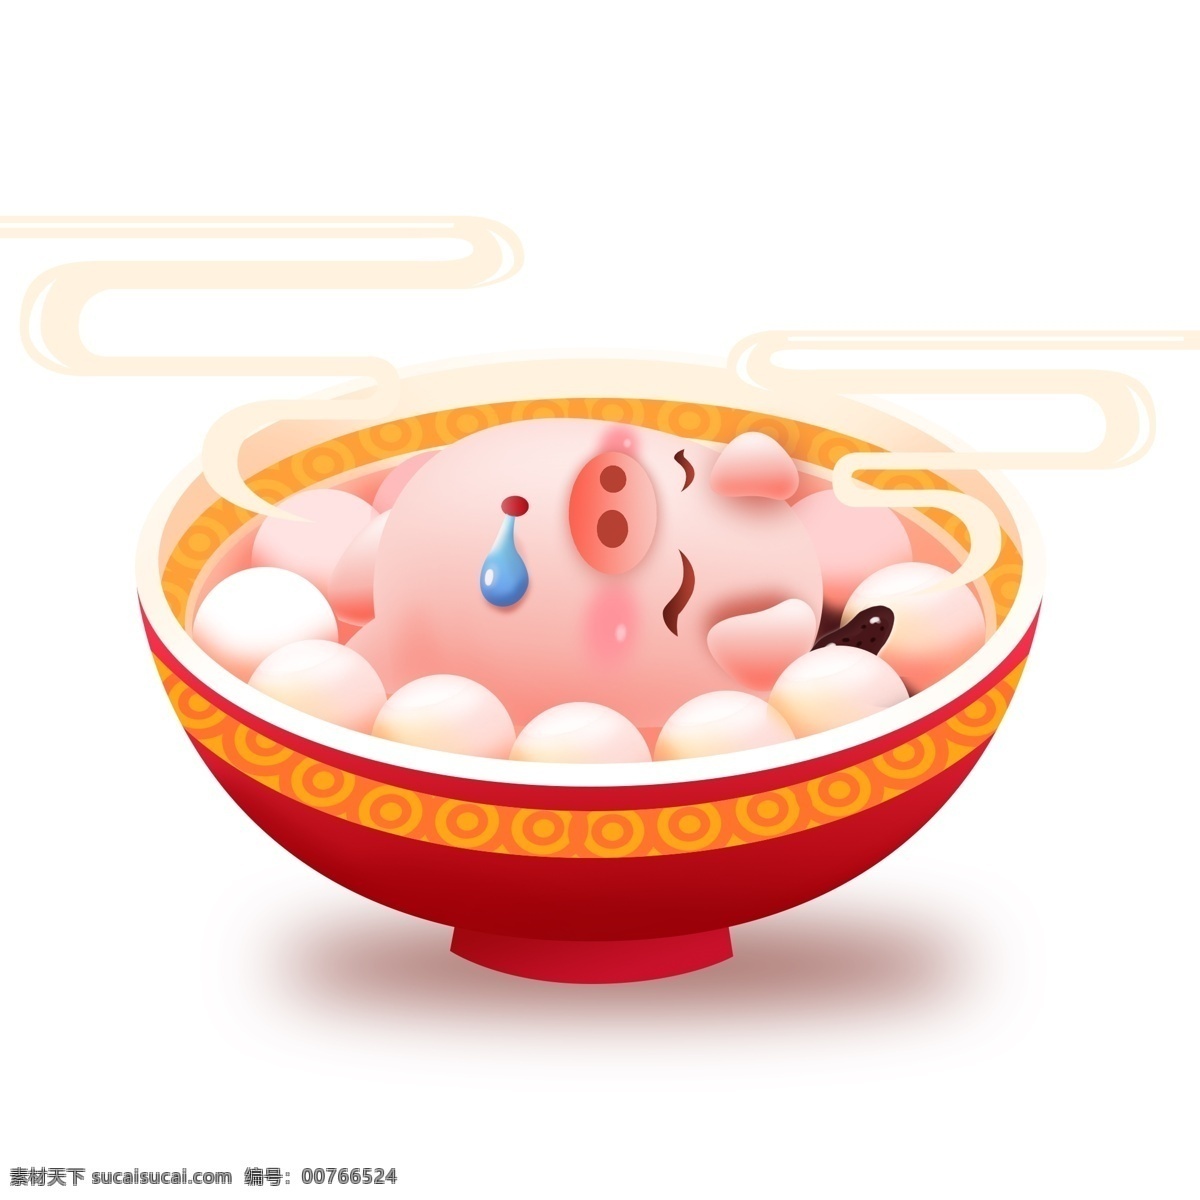 春节 新年 生肖 猪 卡通 矢量 汤圆 过年 新年快乐 立体 卡通猪 猪年快乐 2019 可爱猪